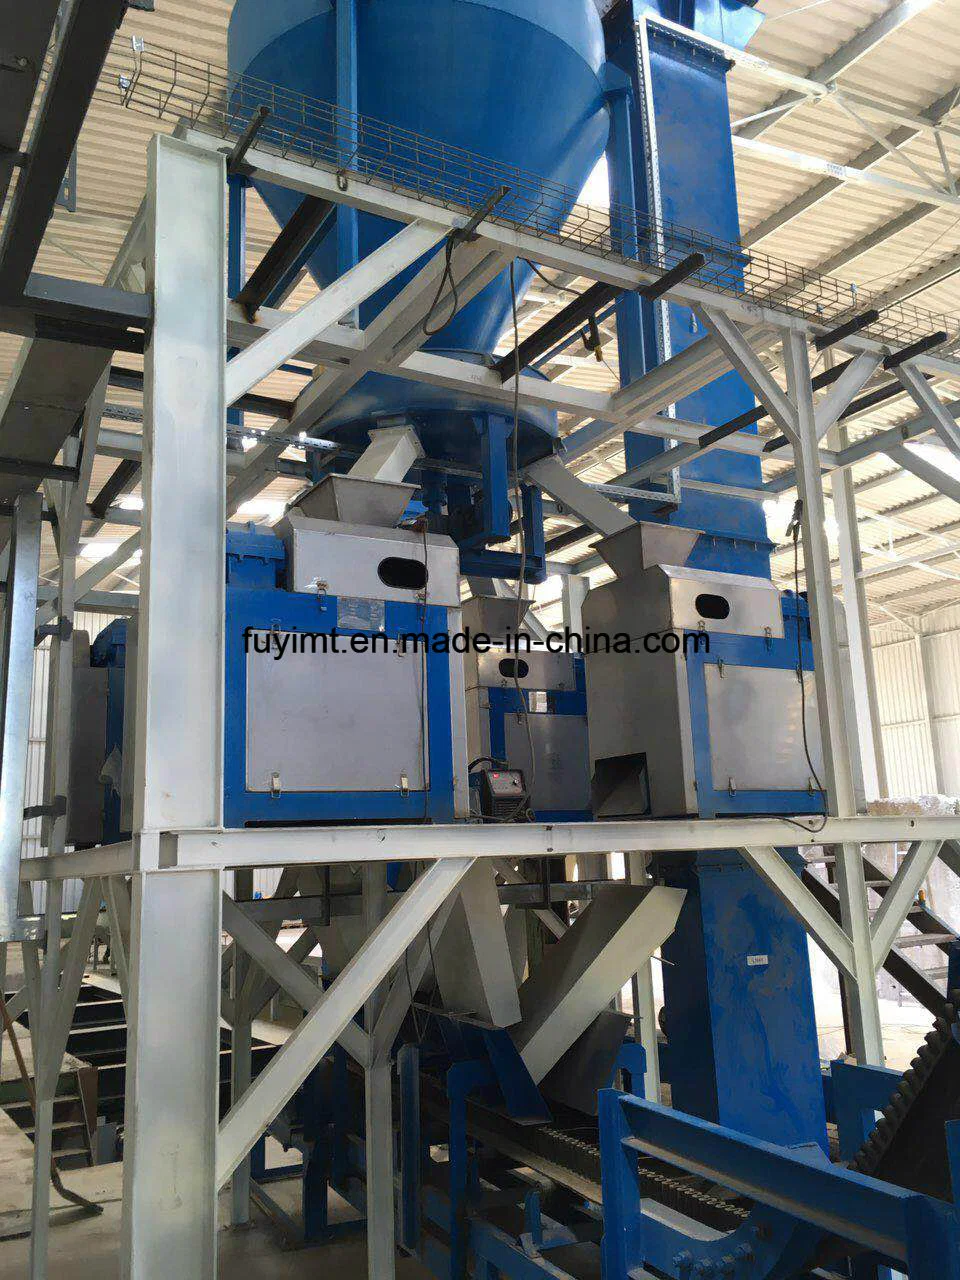 Ammonium chloride roller press chemical equipment & machinery